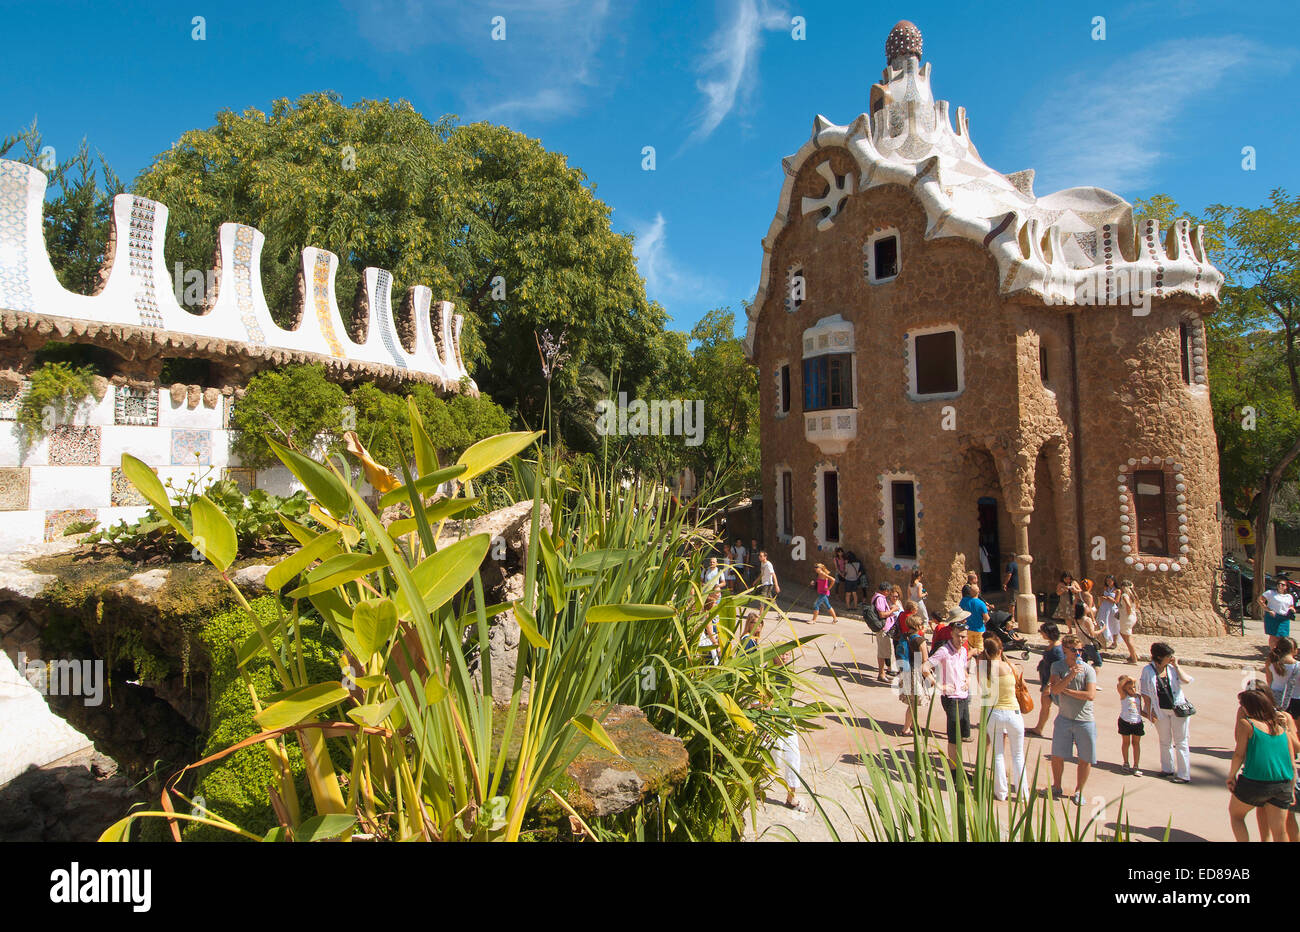 Gate House dans le pavillon d'entrée, le parc Guell, Barcelone, Espagne Banque D'Images